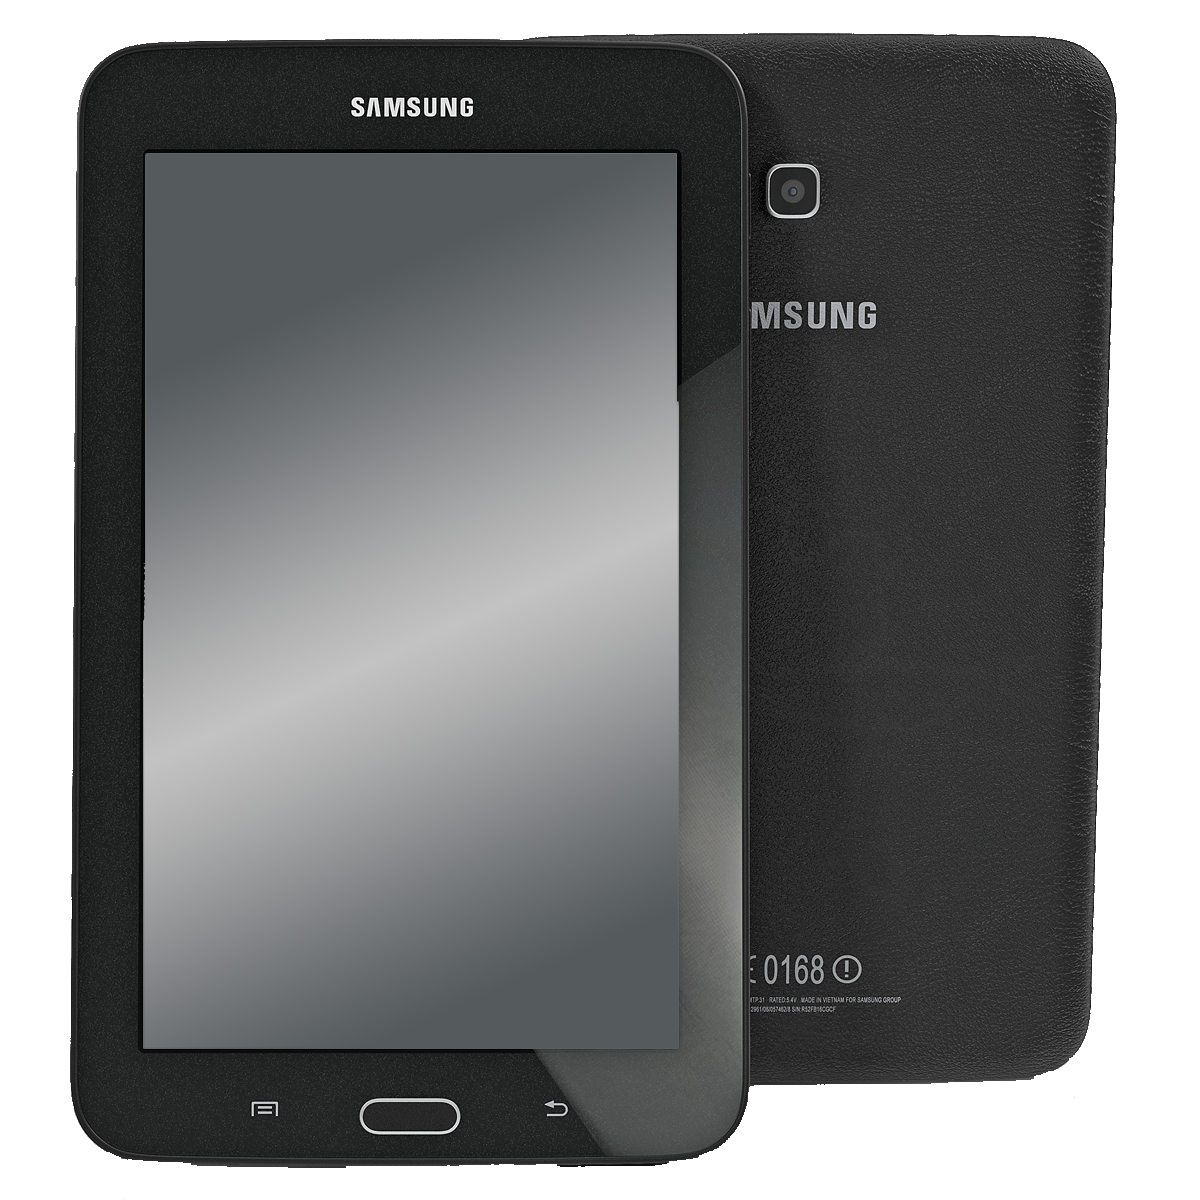 Samsung Galaxy Tab 3 7.0 lite Wi-Fi T113 schwarz - Ohne Vertrag